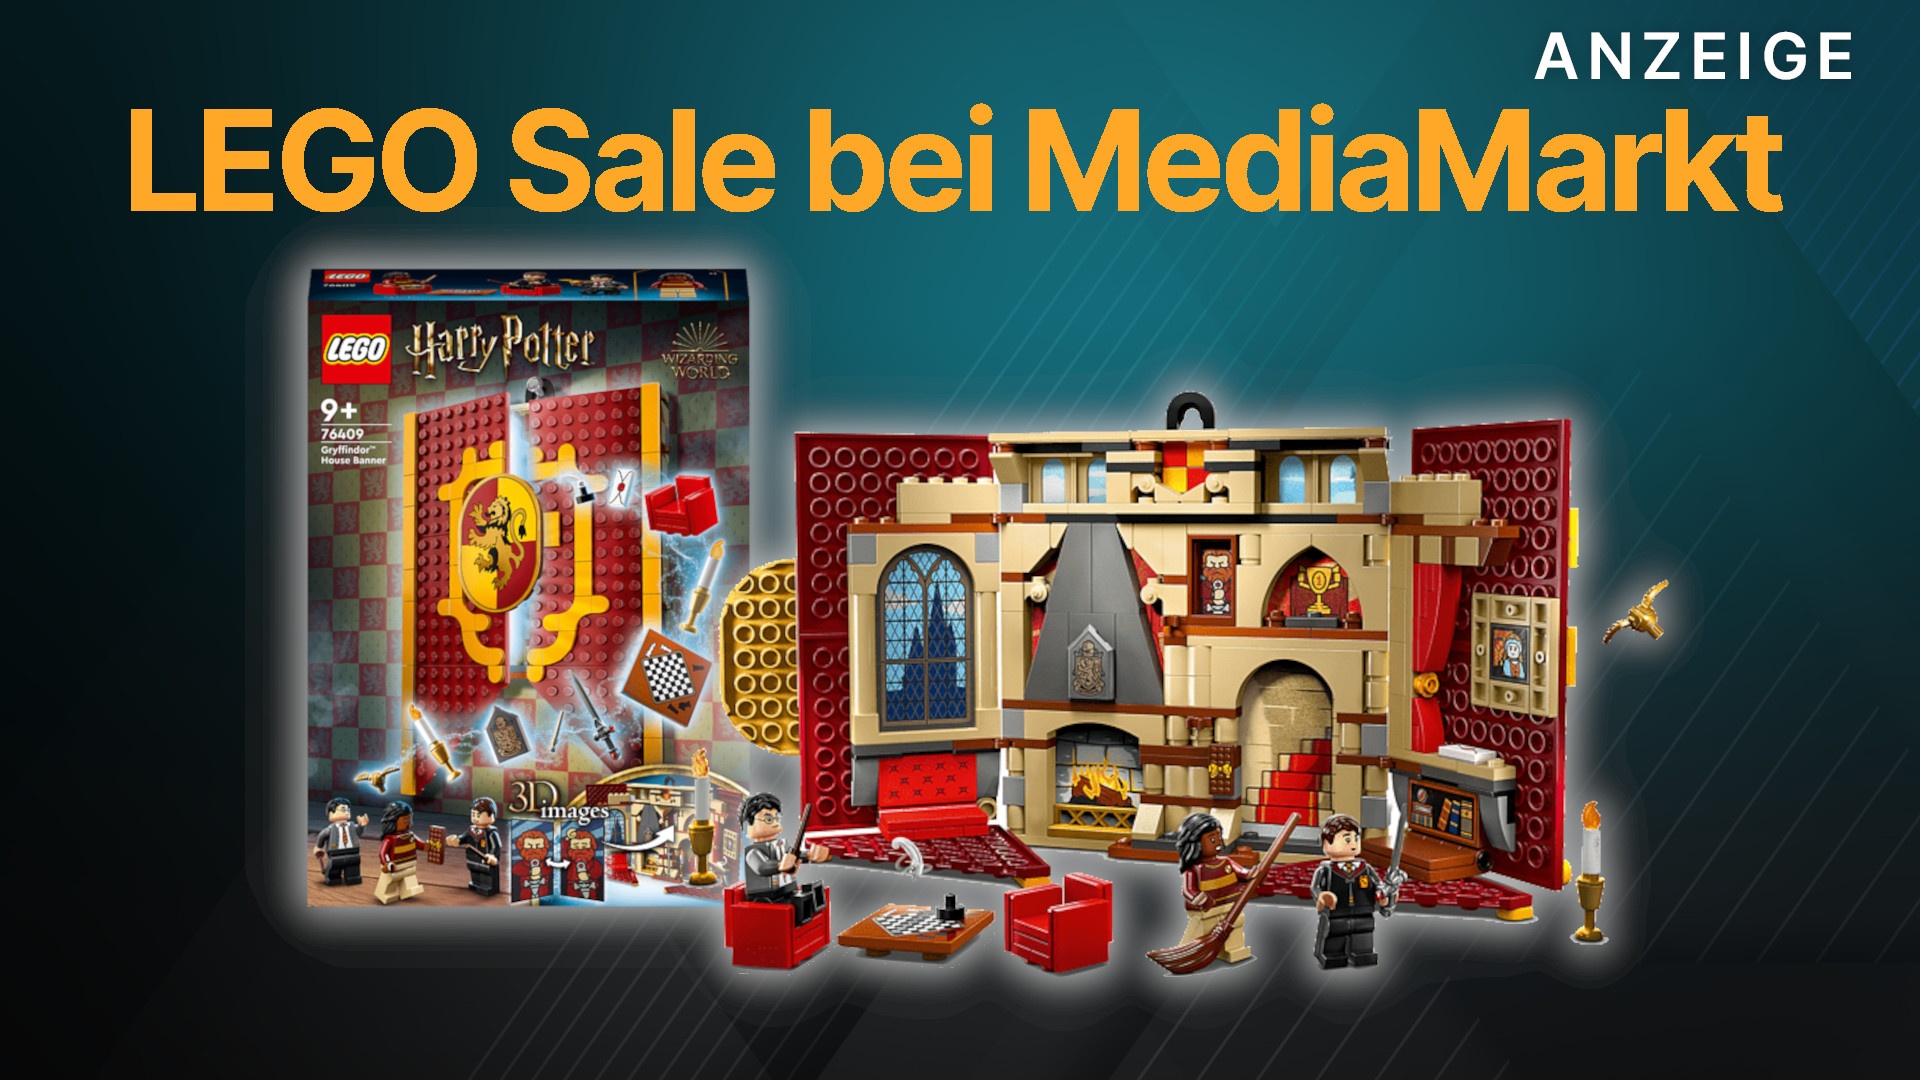 LEGO bei MediaMarkt: Sets zu Harry Potter, Mario und jetzt im Angebot